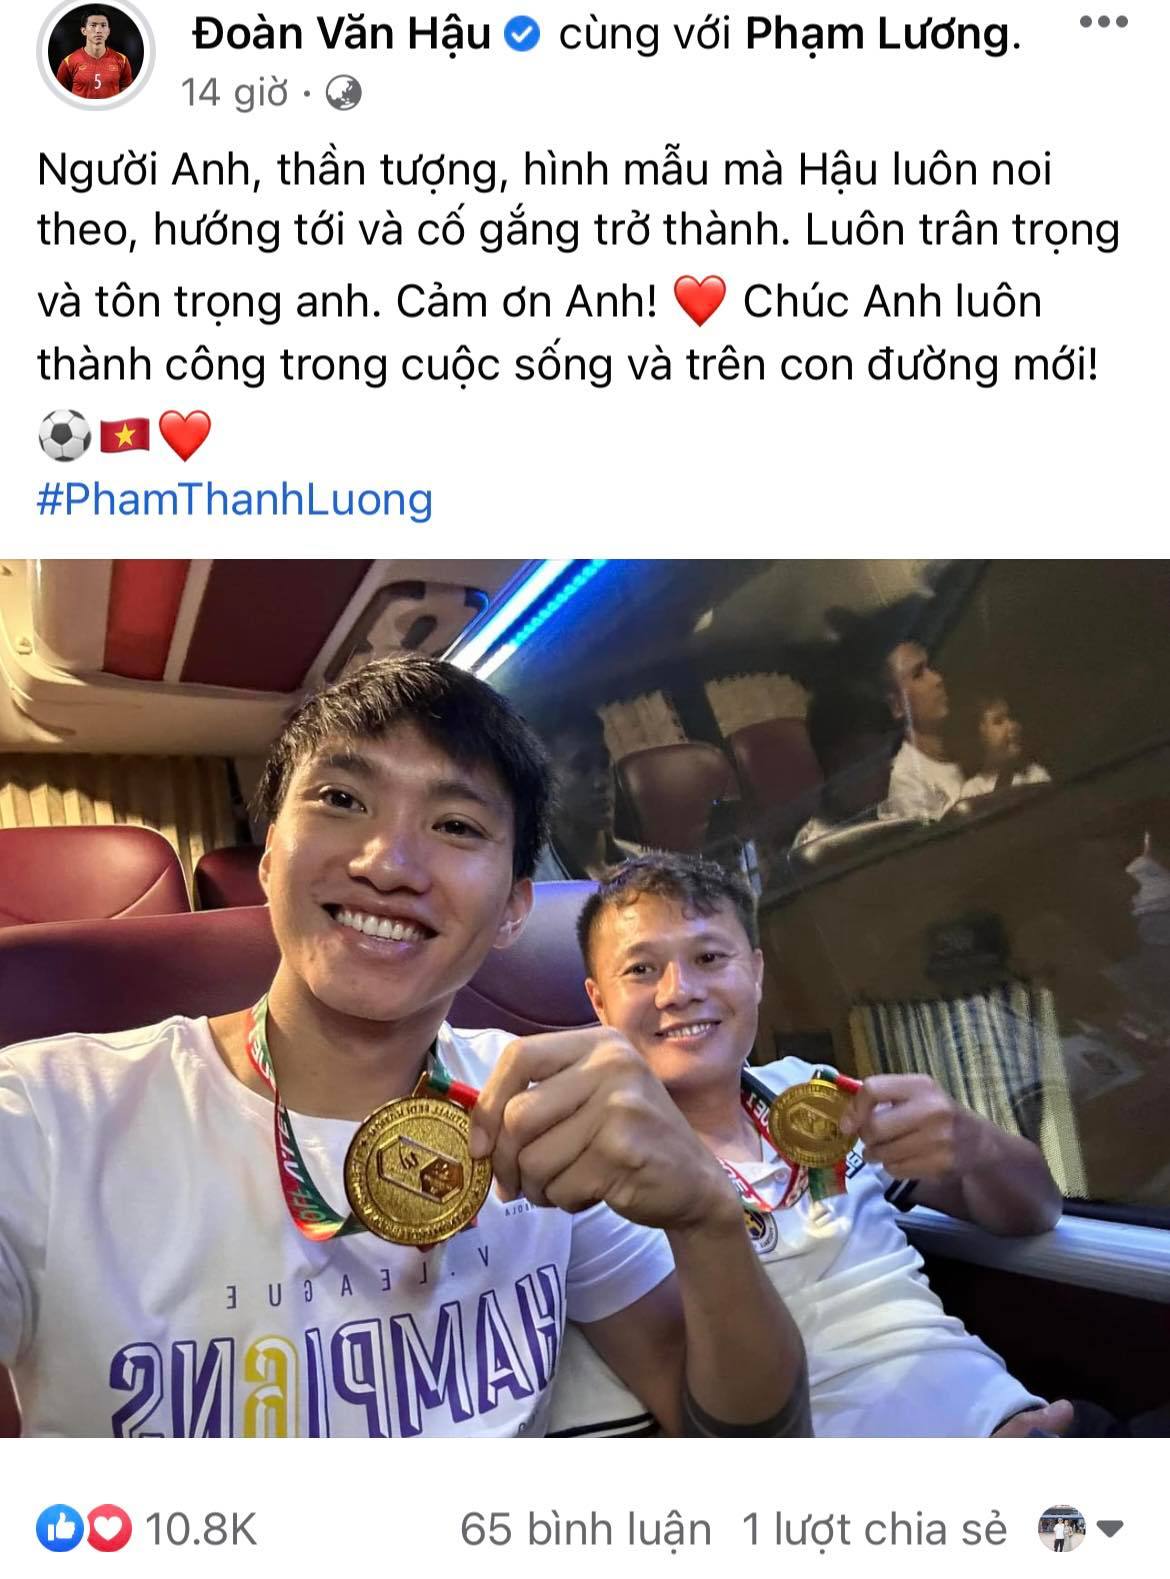 Dàn tuyển thủ Việt Nam đồng loạt tri ân Thành Lương - Ảnh 3.